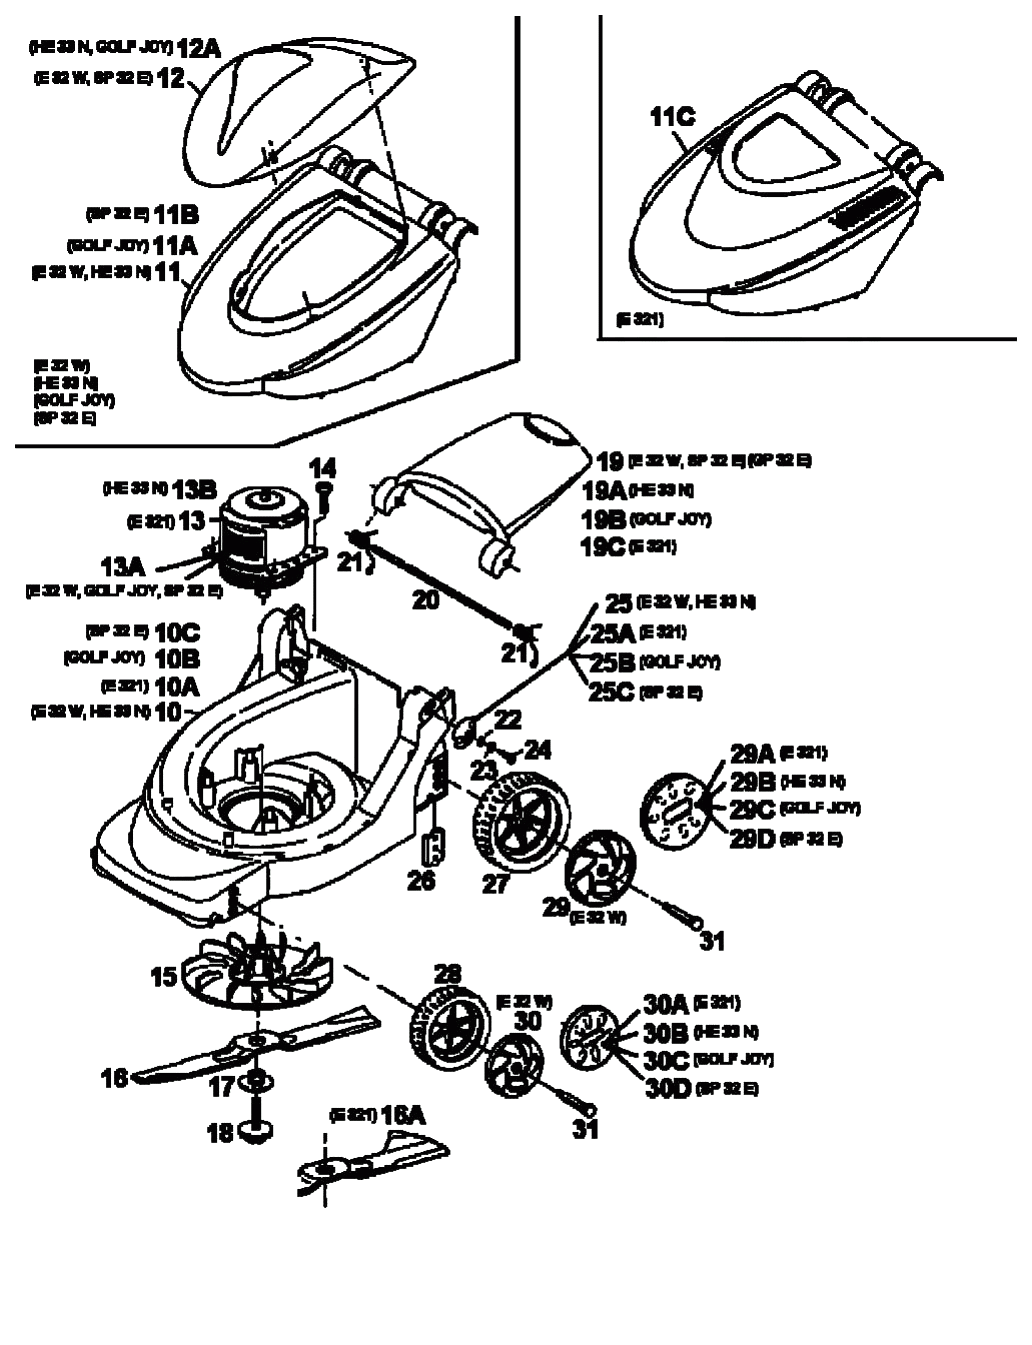 MTD Артикул 18A-C4D-678 (год выпуска 1998). Электромотор, ножи, колеса